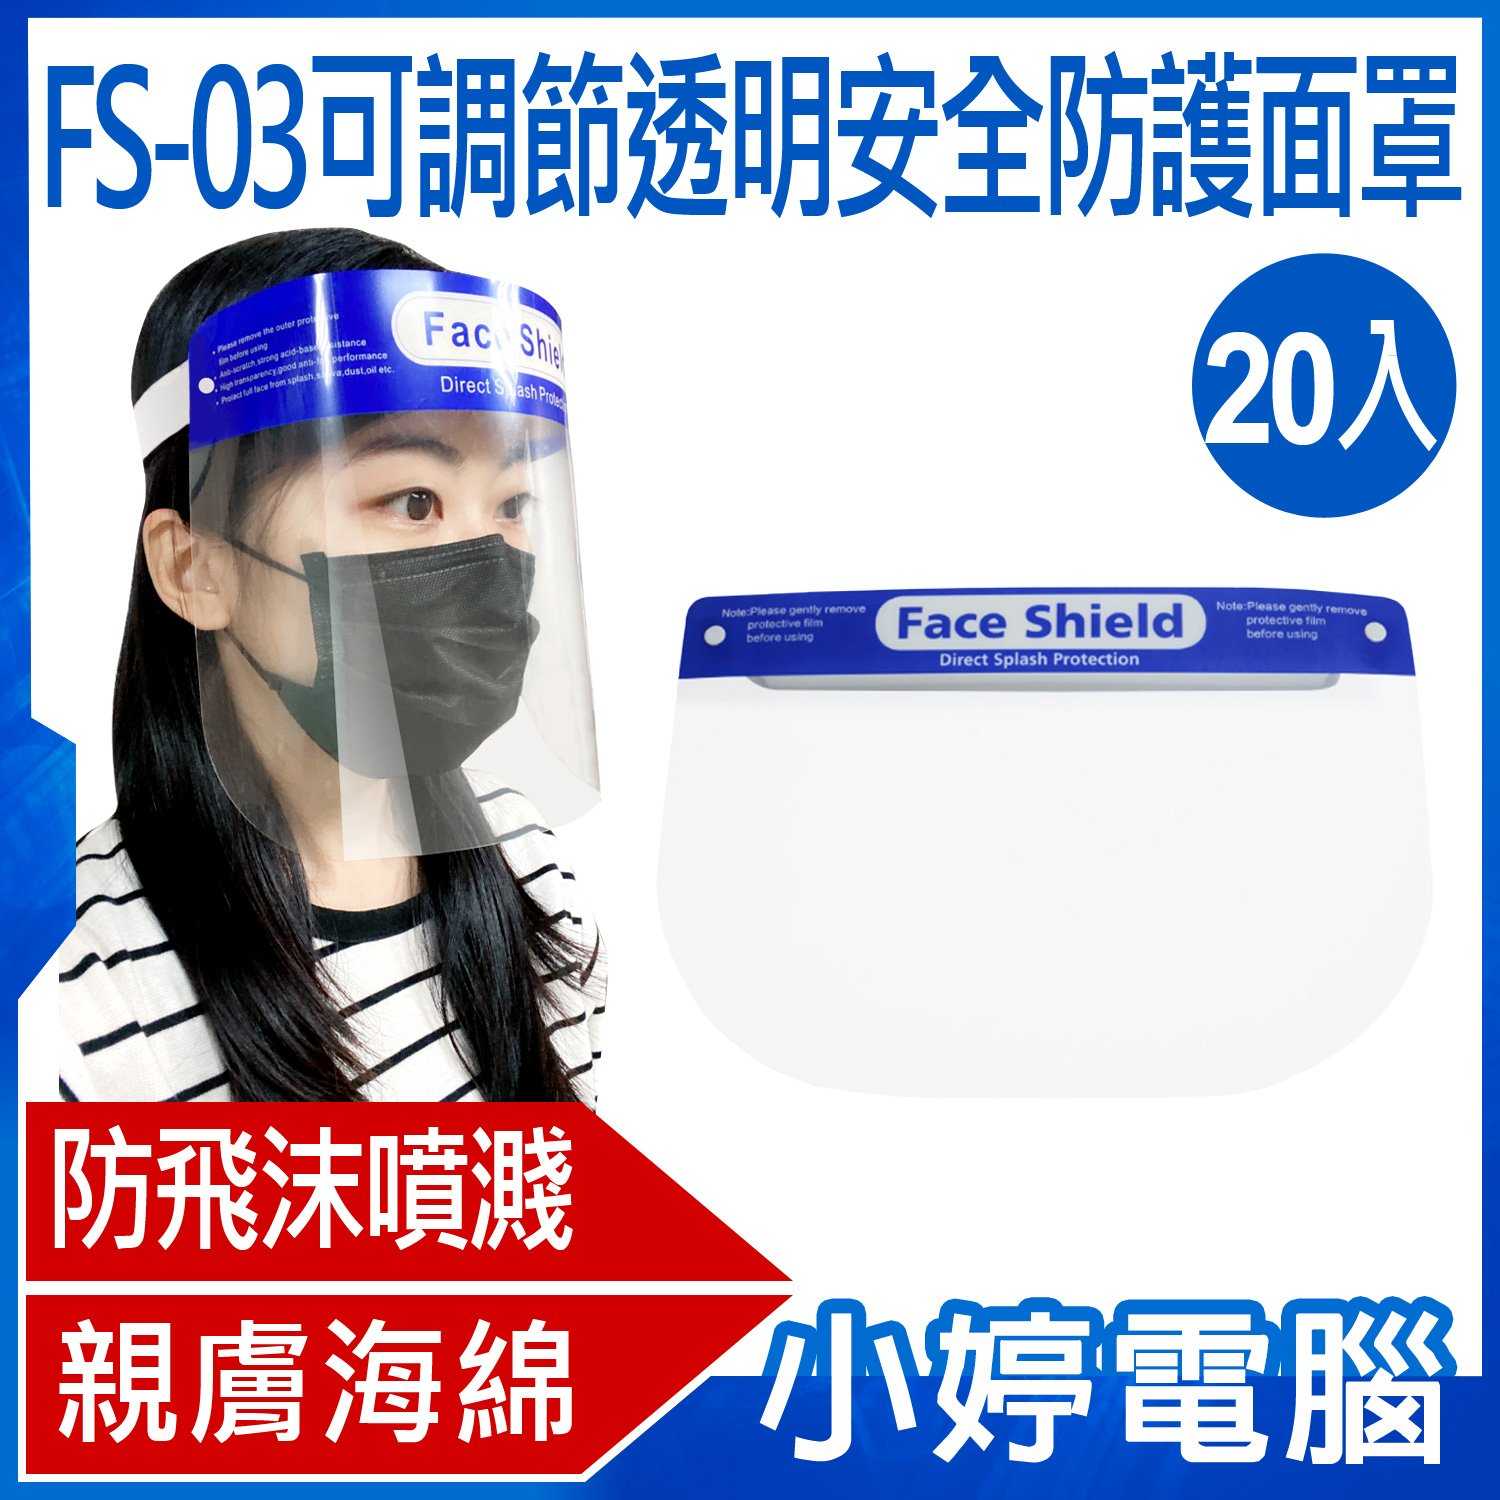 【小婷電腦】FS-03可調節透明安全防護面罩 防飛沫噴濺 高度透明 親膚海綿 加大面罩 面具 全臉防護 20入